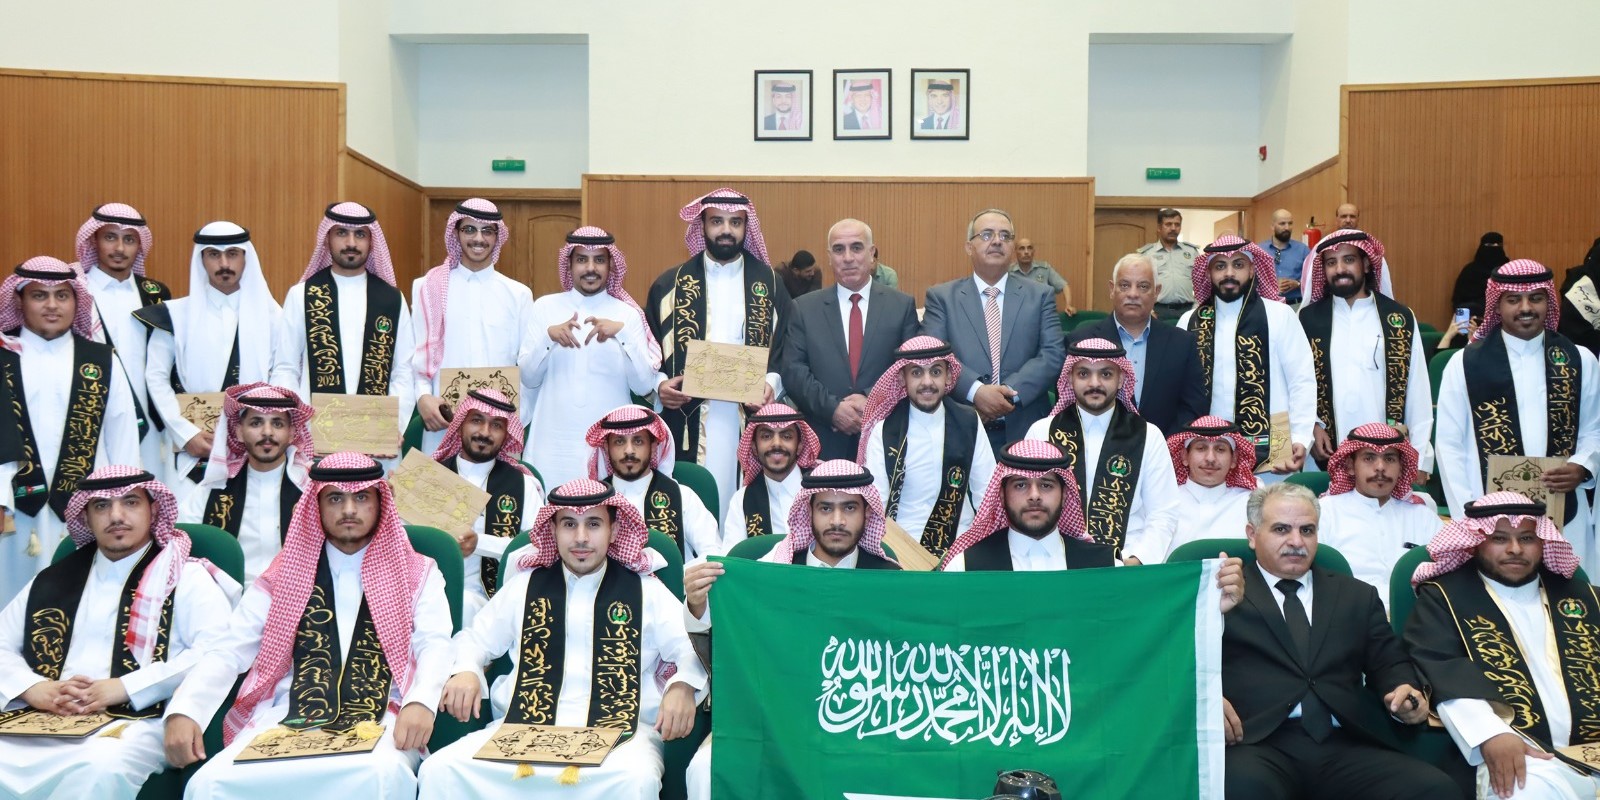  حفل تكريم الطلبة السعوديين المتوقع تخرجهم الدارسين في البرنامج الدولي في جامعة الحسين بن طلال.